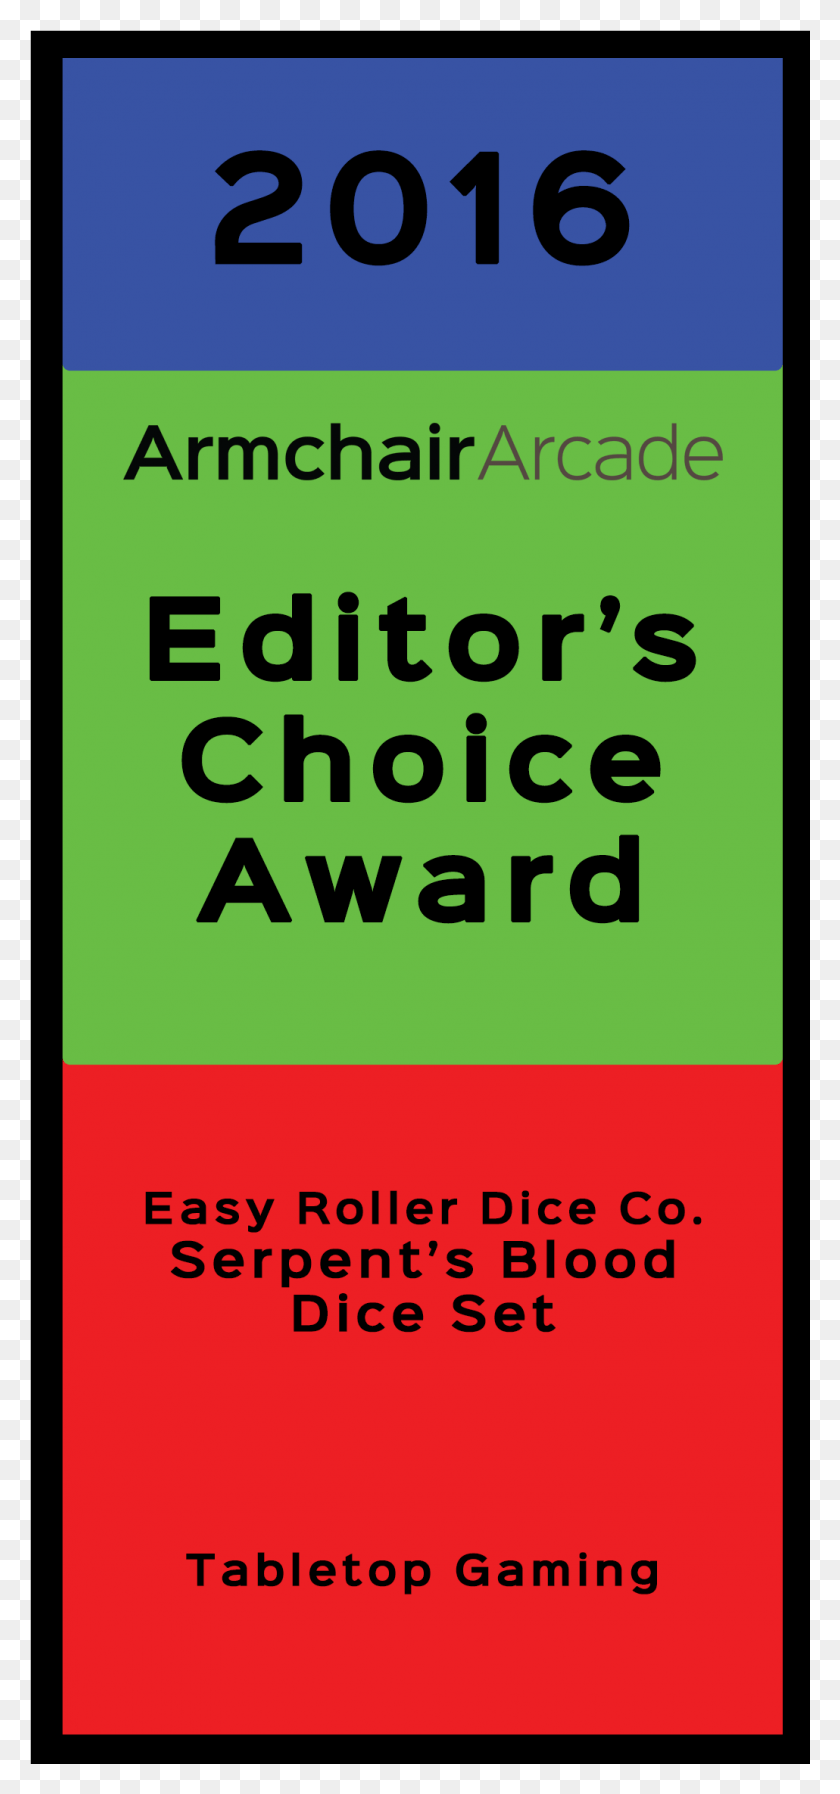 1030x2291 Descargar Png / Sillón Arcade Editor39S Choice Award 2016